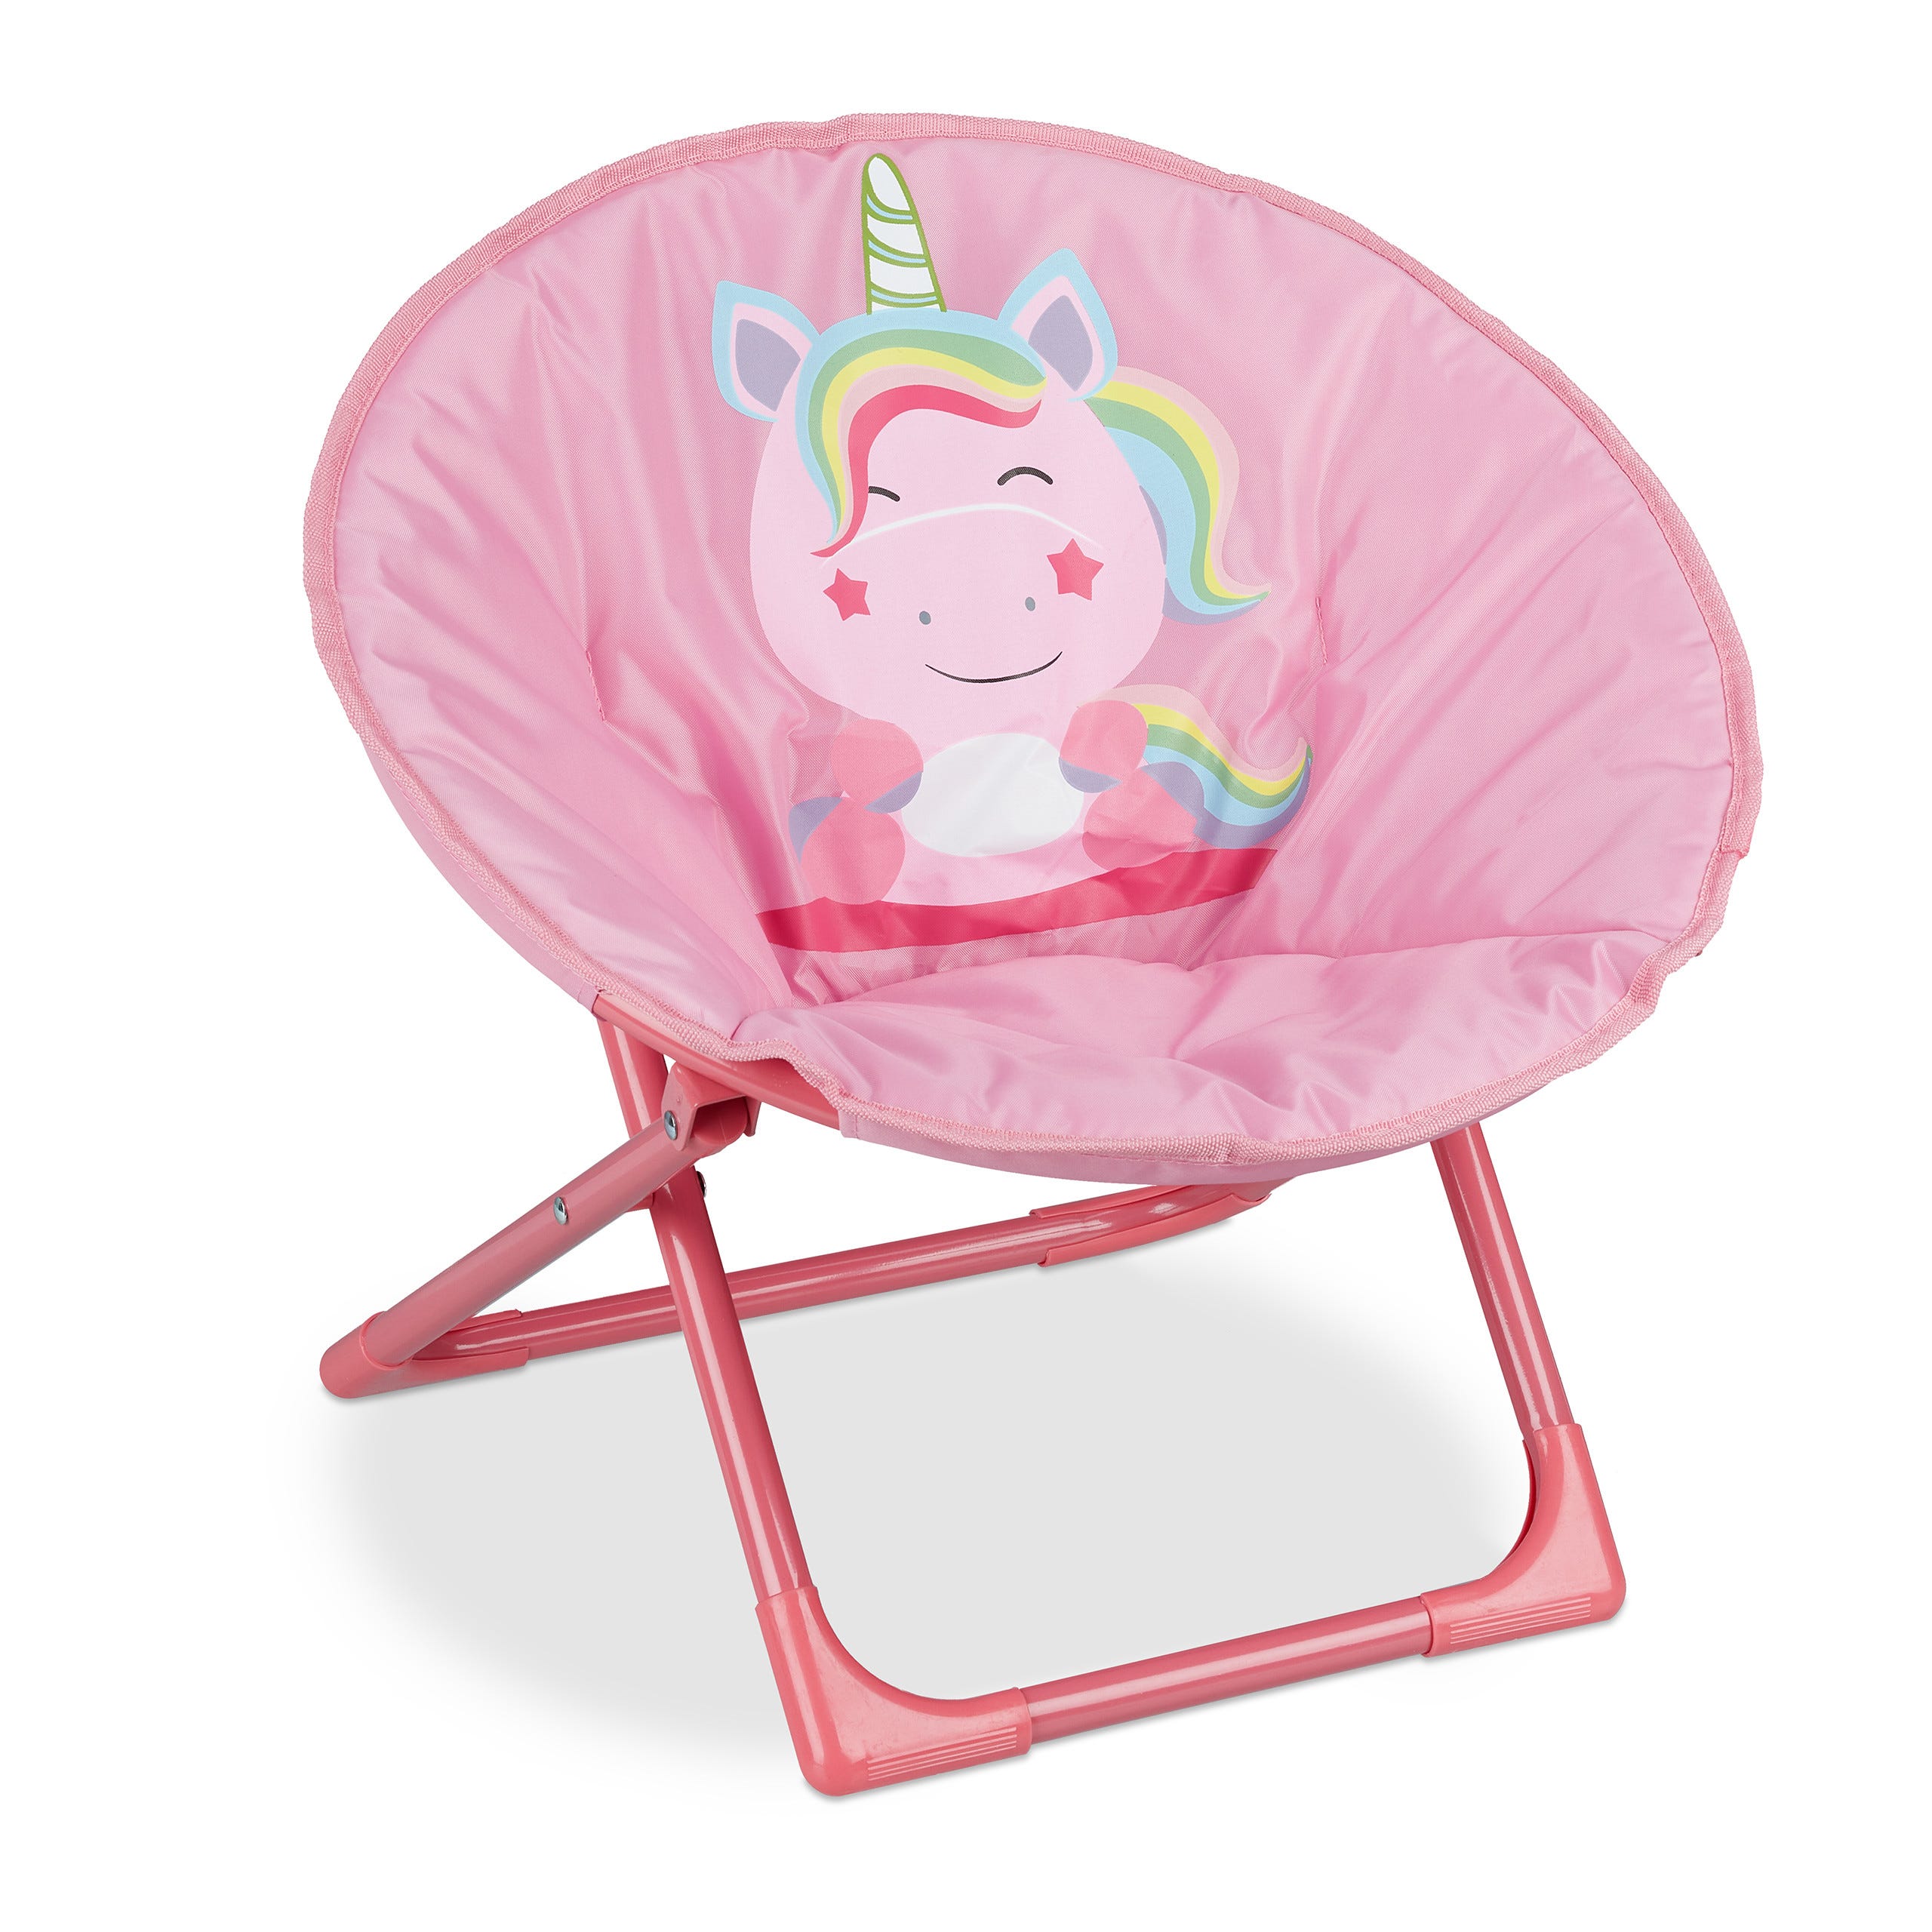 Relaxdays Chaise Lune pour votre enfant, pliable, unisexe, intérieur et  extérieur, fauteuil pliable, rose